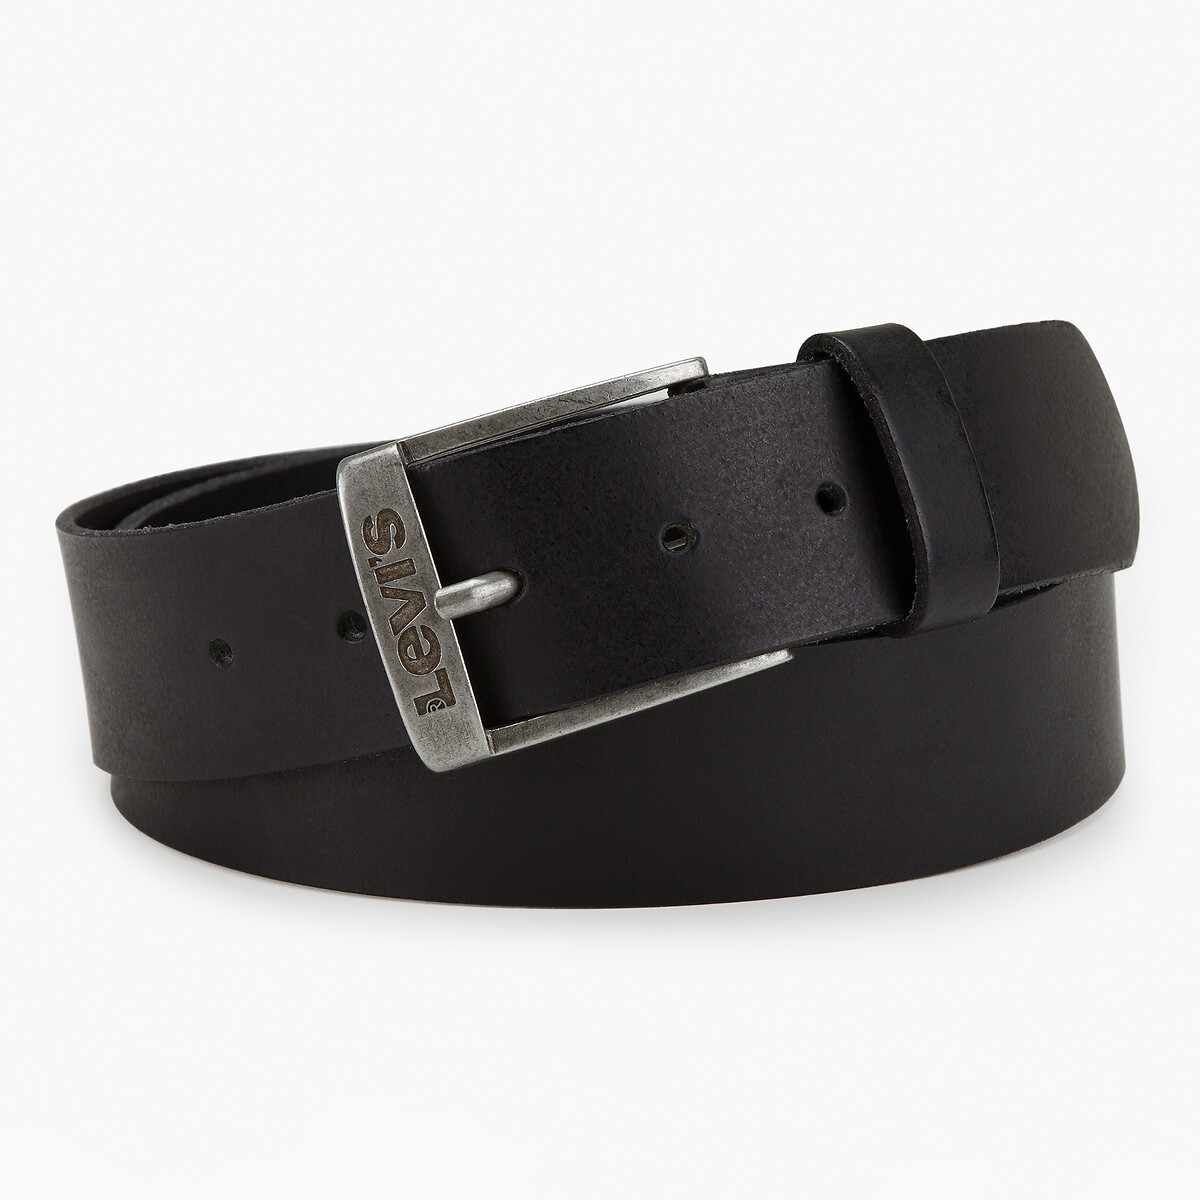 New duncan leather belt black Levi's | La Redoute